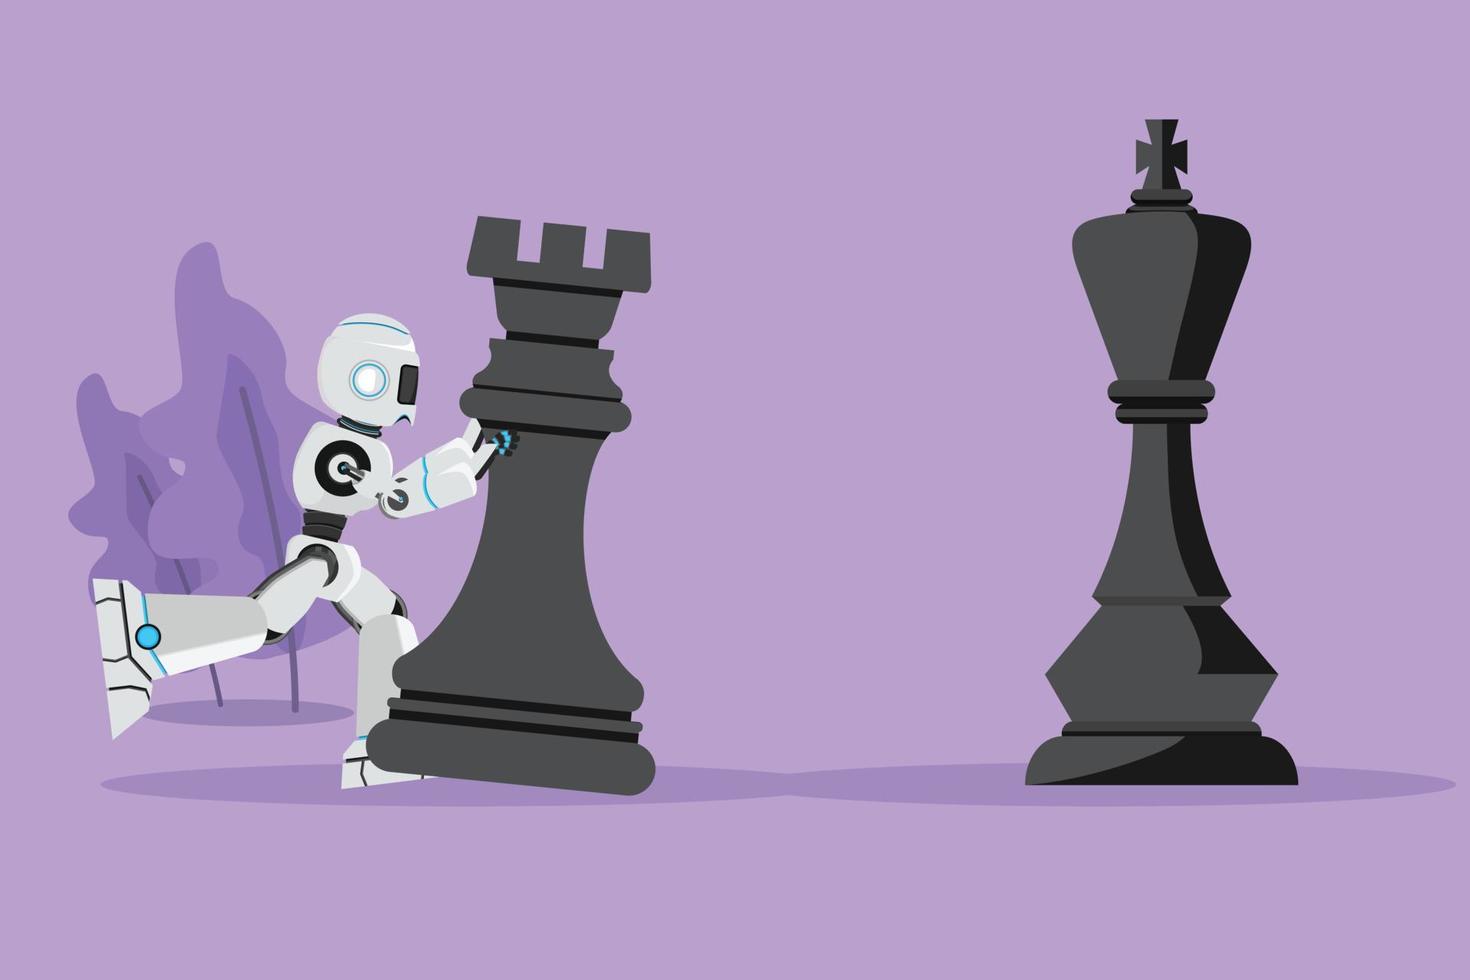 El robot de dibujo de diseño plano gráfico empuja una enorme pieza de ajedrez de torre para vencer al rey. movimiento estratégico en el juego ganador. desarrollo tecnológico futuro. inteligencia artificial. ilustración vectorial de estilo de dibujos animados vector